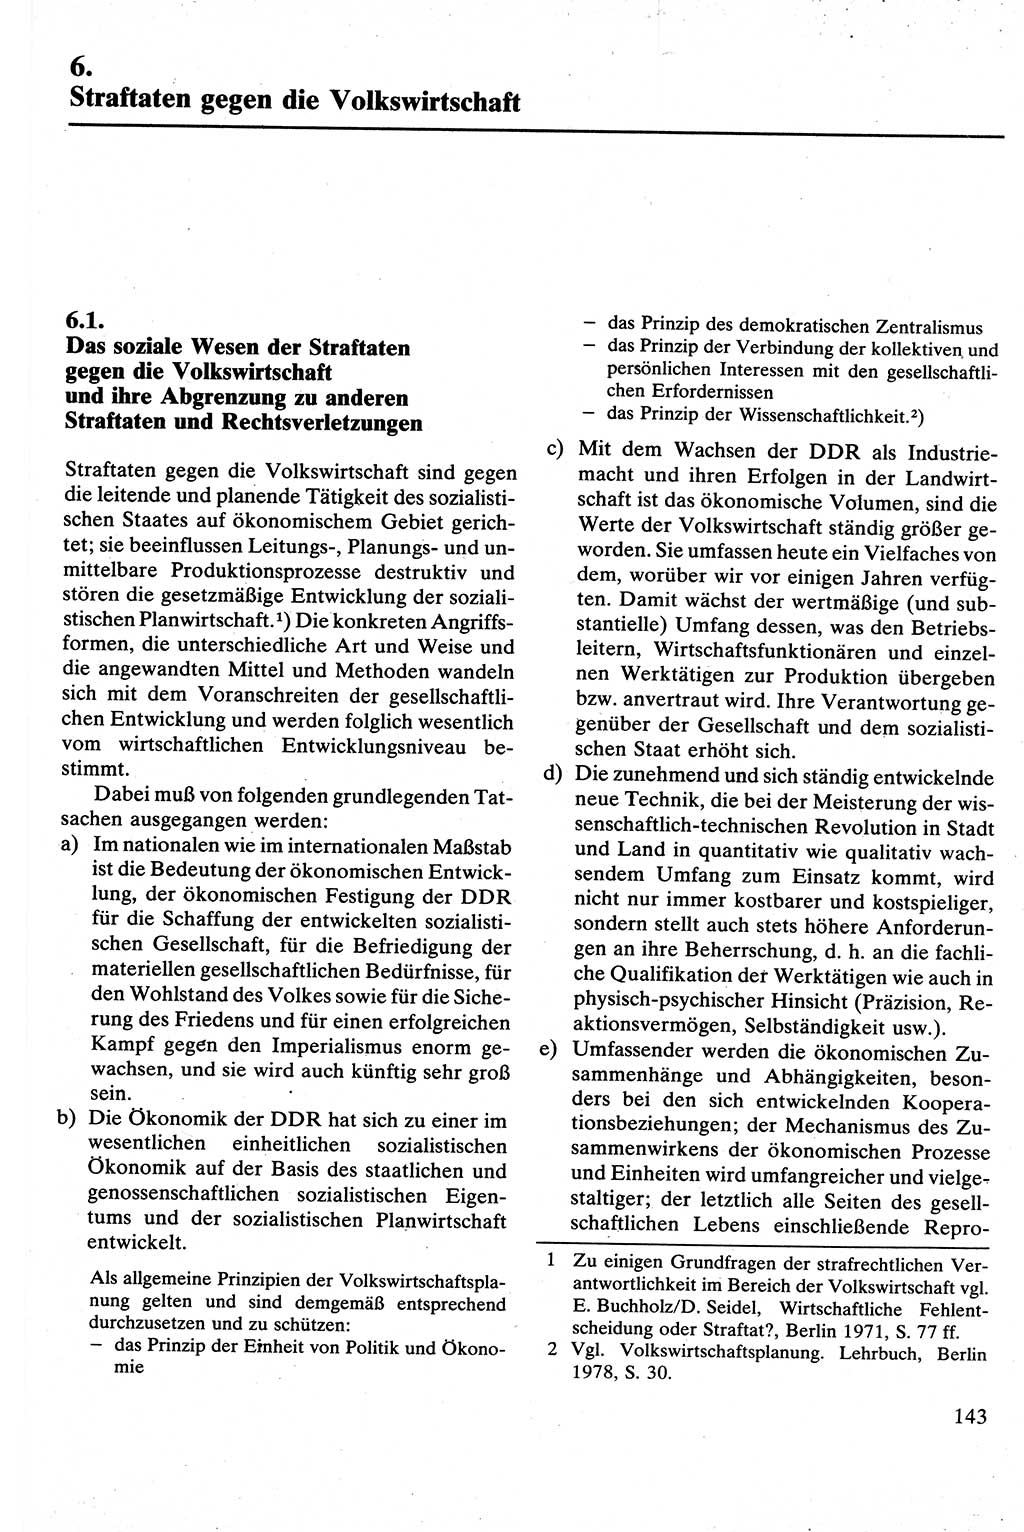 Strafrecht [Deutsche Demokratische Republik (DDR)], Besonderer Teil, Lehrbuch 1981, Seite 143 (Strafr. DDR BT Lb. 1981, S. 143)